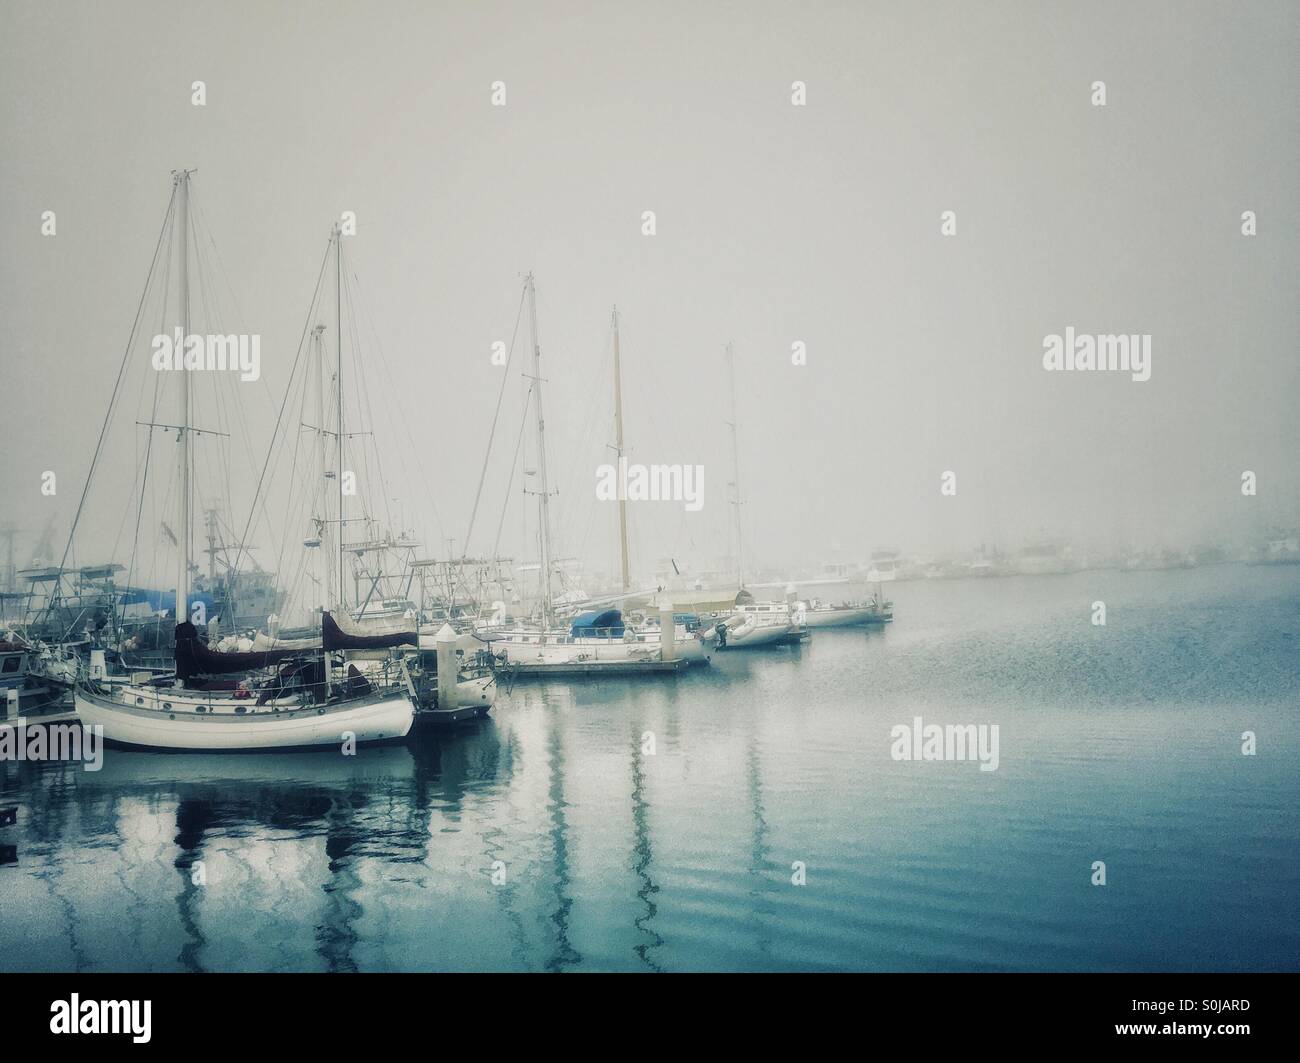 Barche ormeggiate al porto di la densa nebbia. Generico/tutti i nomi e i numeri estratti. Foto Stock